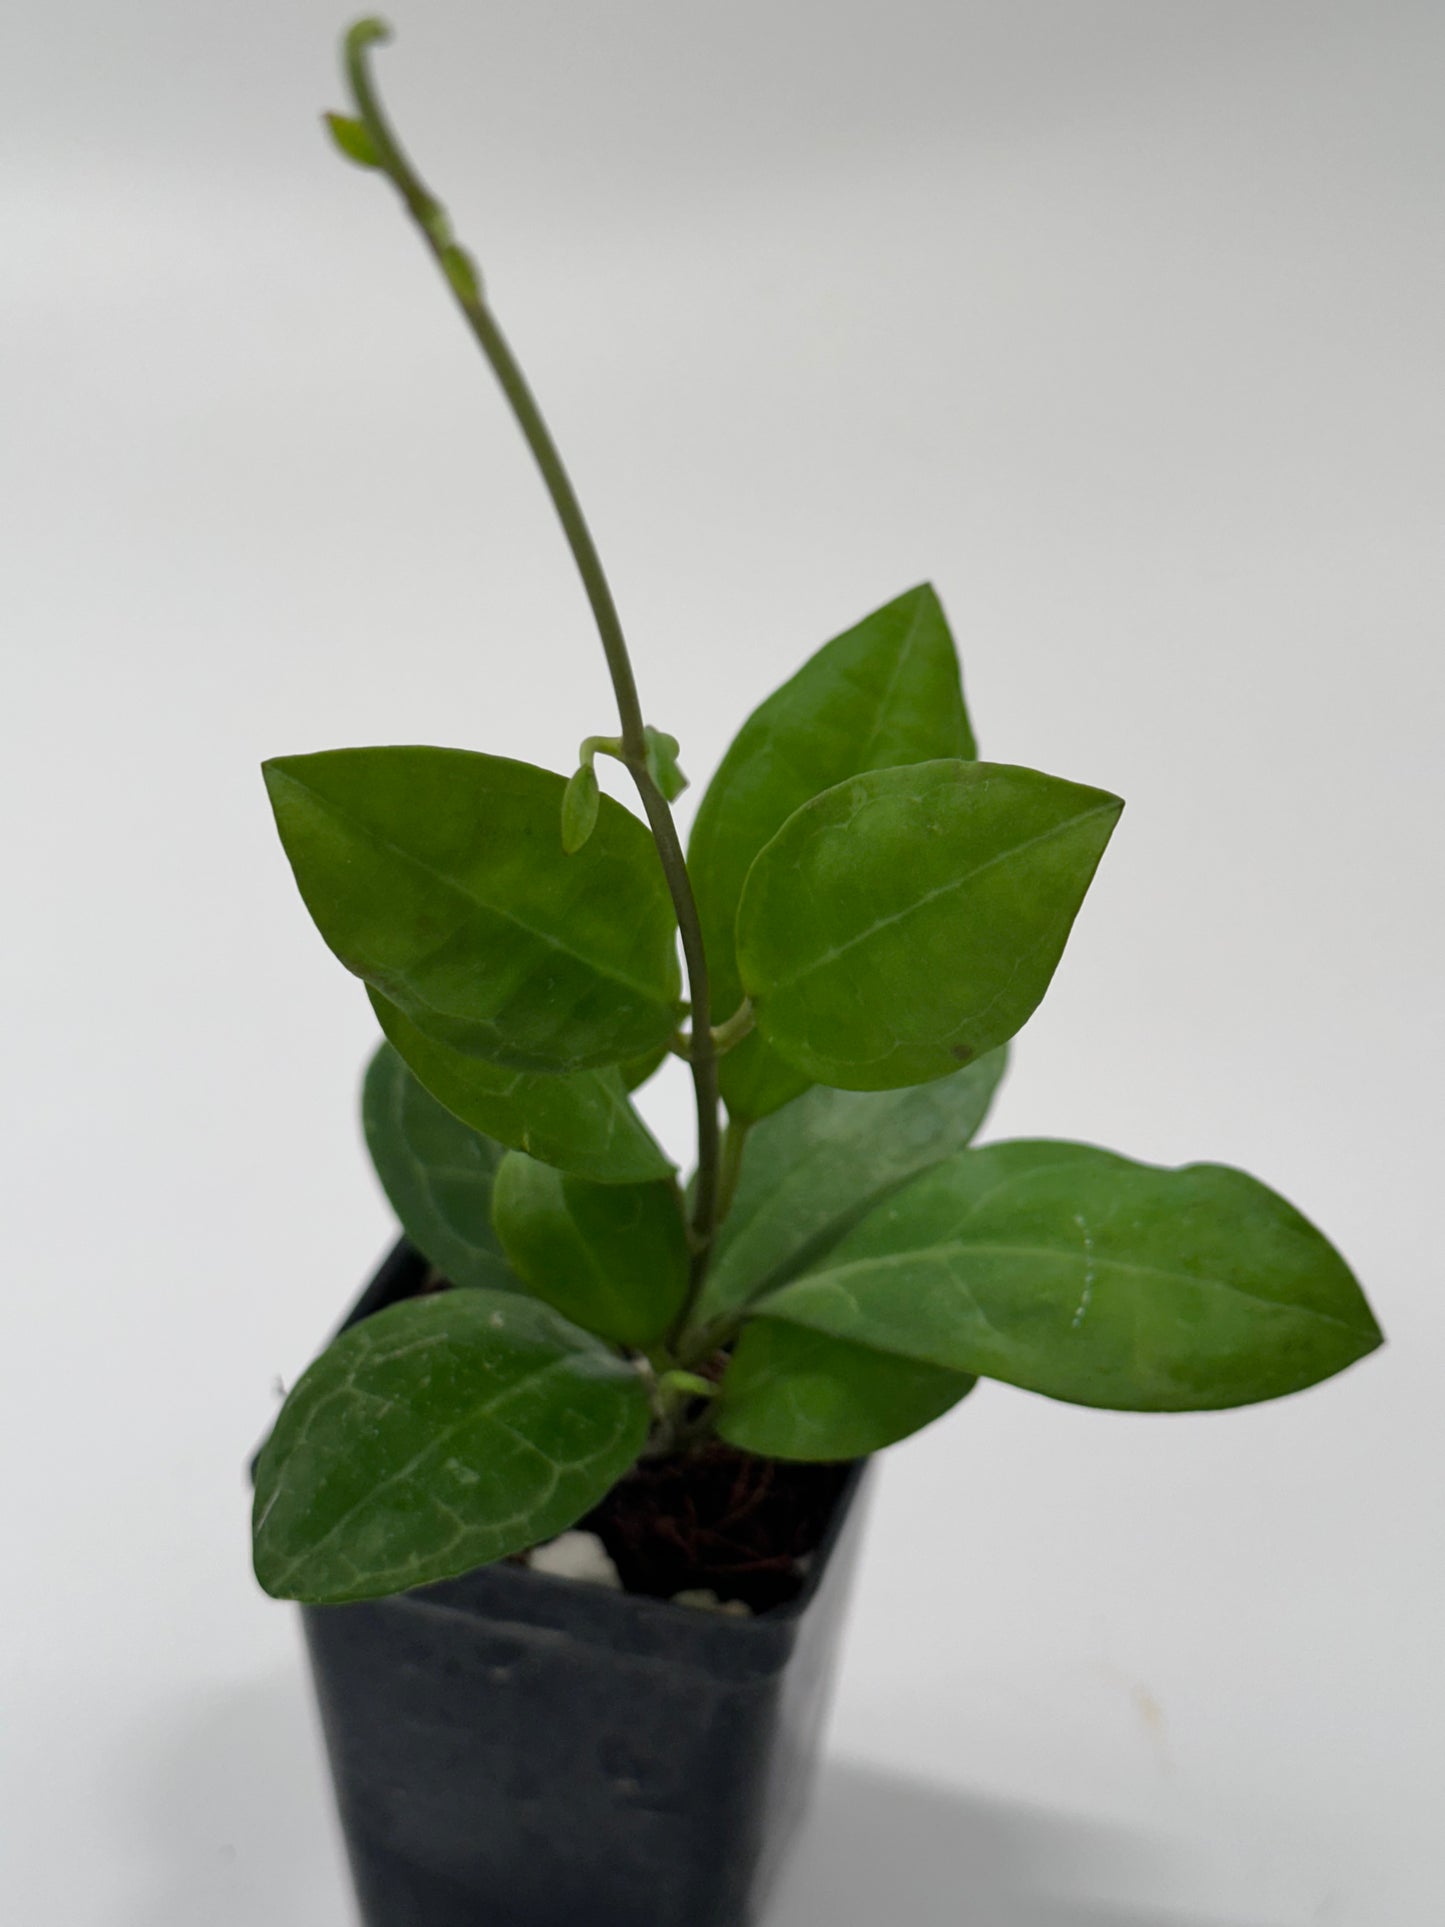 Hoya elliptica